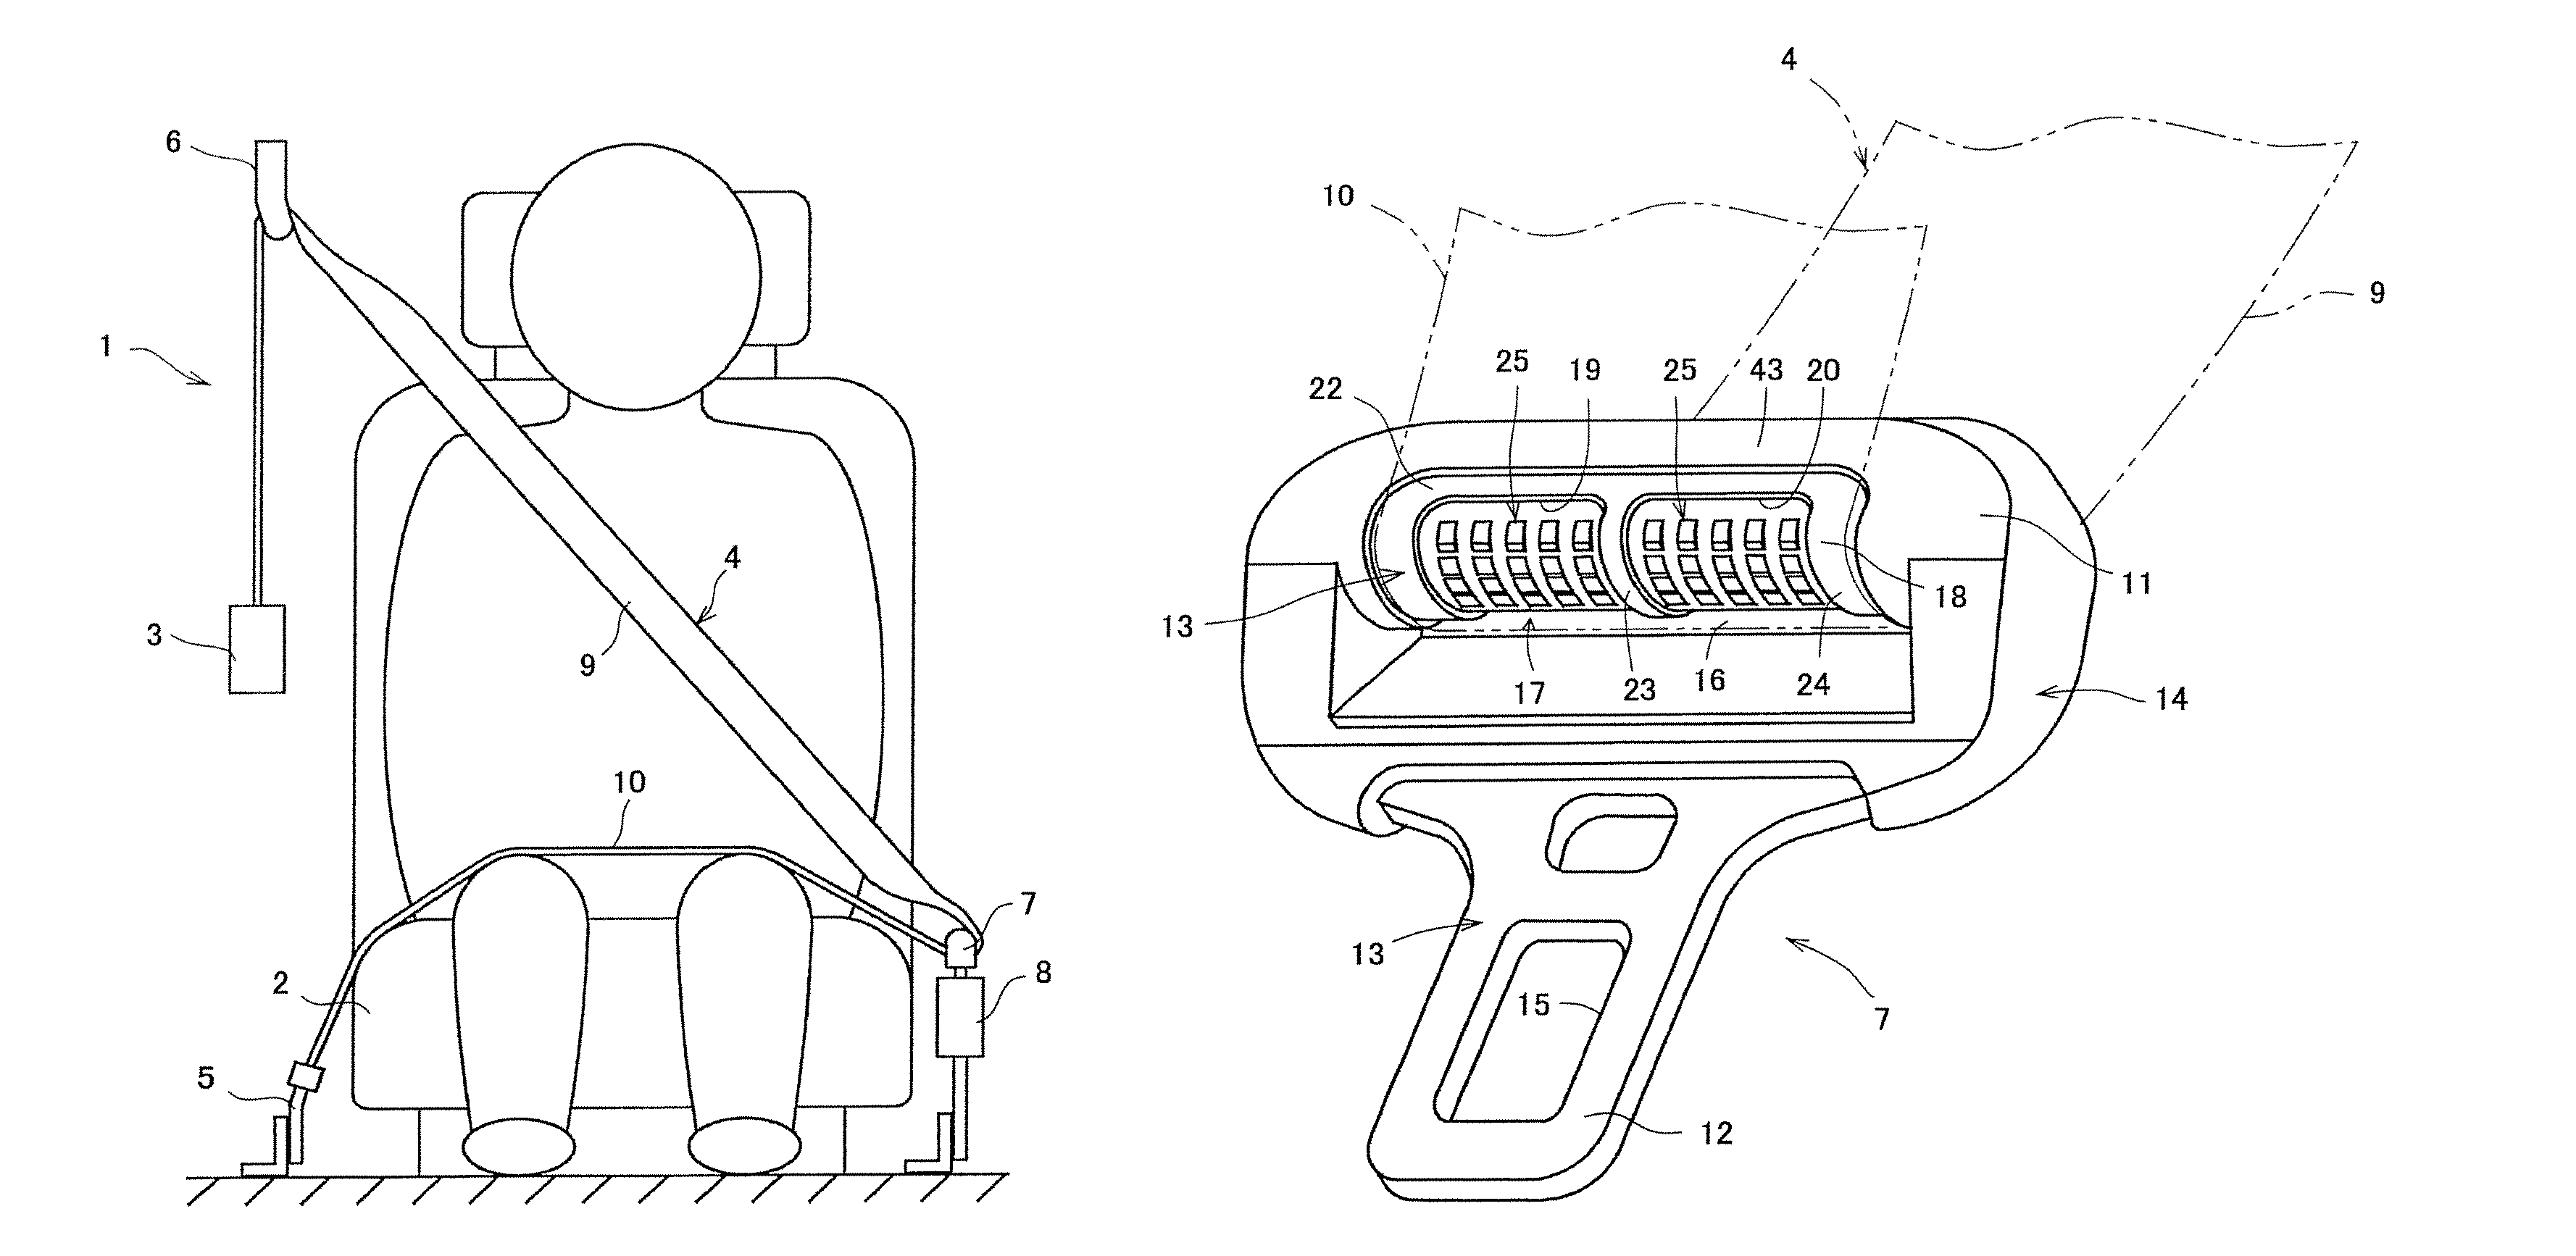 Tongue and seat belt apparatus using tongue